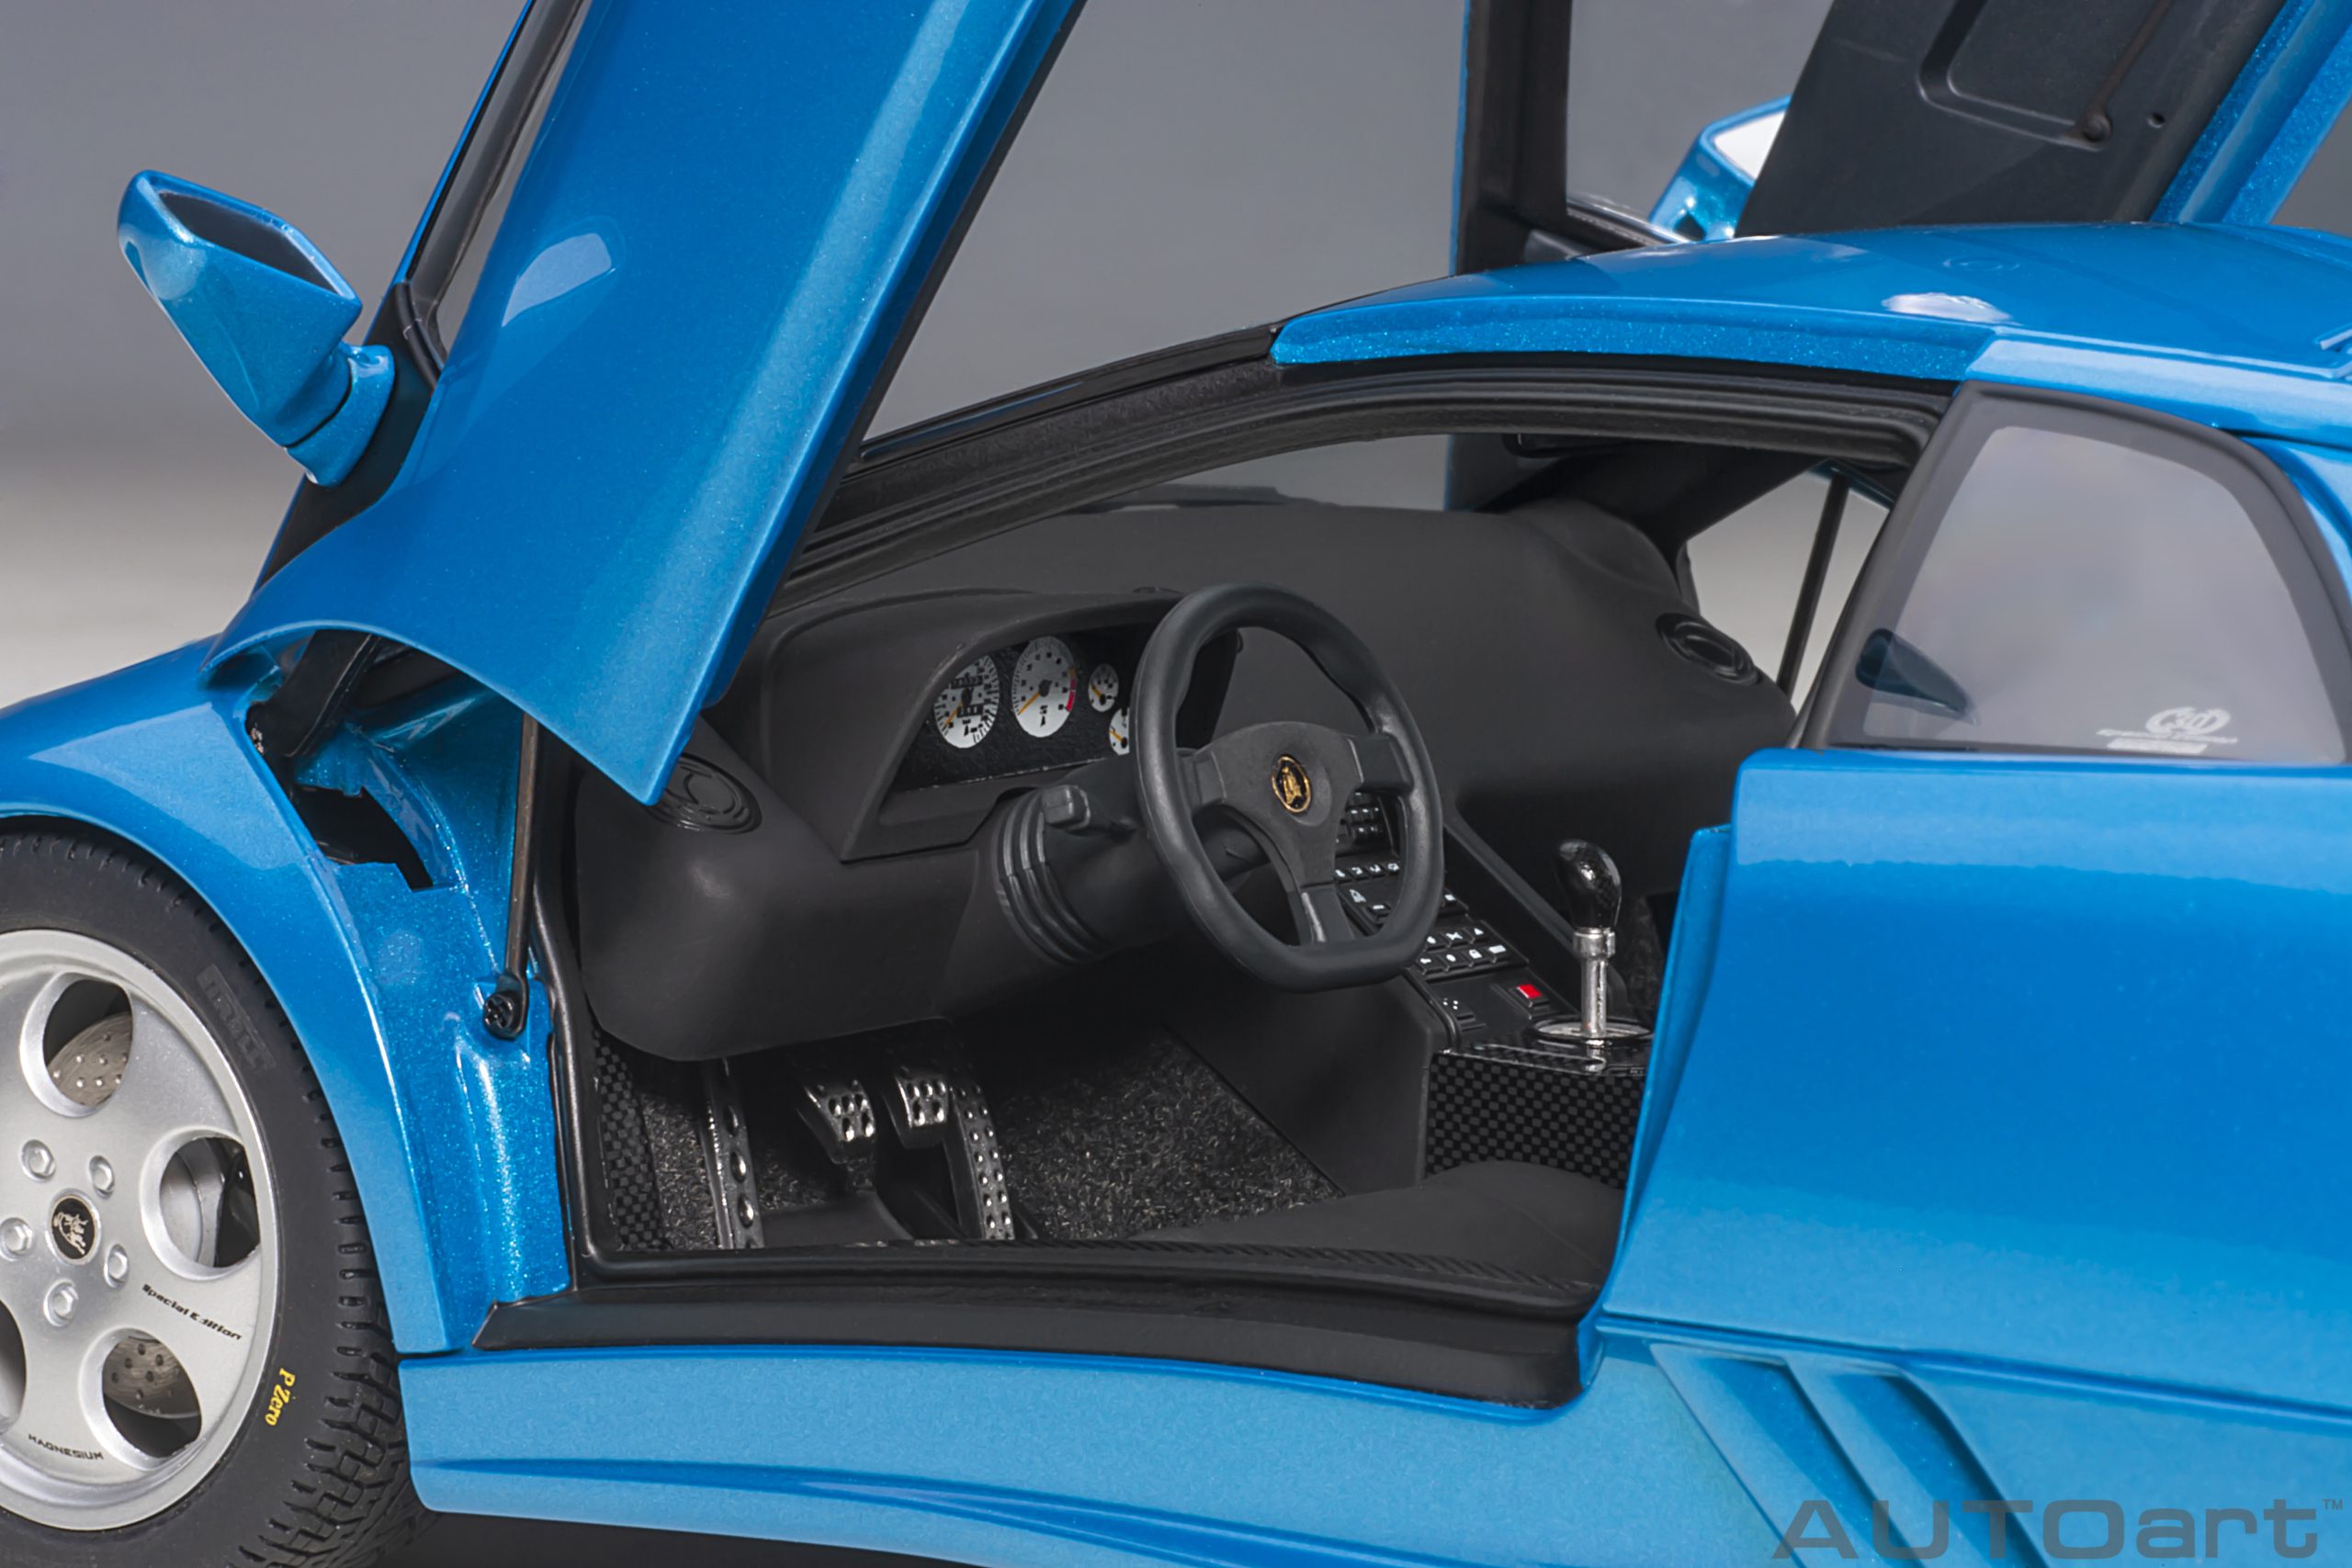 autoart-79156-5-Lamborghini-Diablo-SE30-30th-Anniversary-Edition-Blu-Sirena-metallic-blue